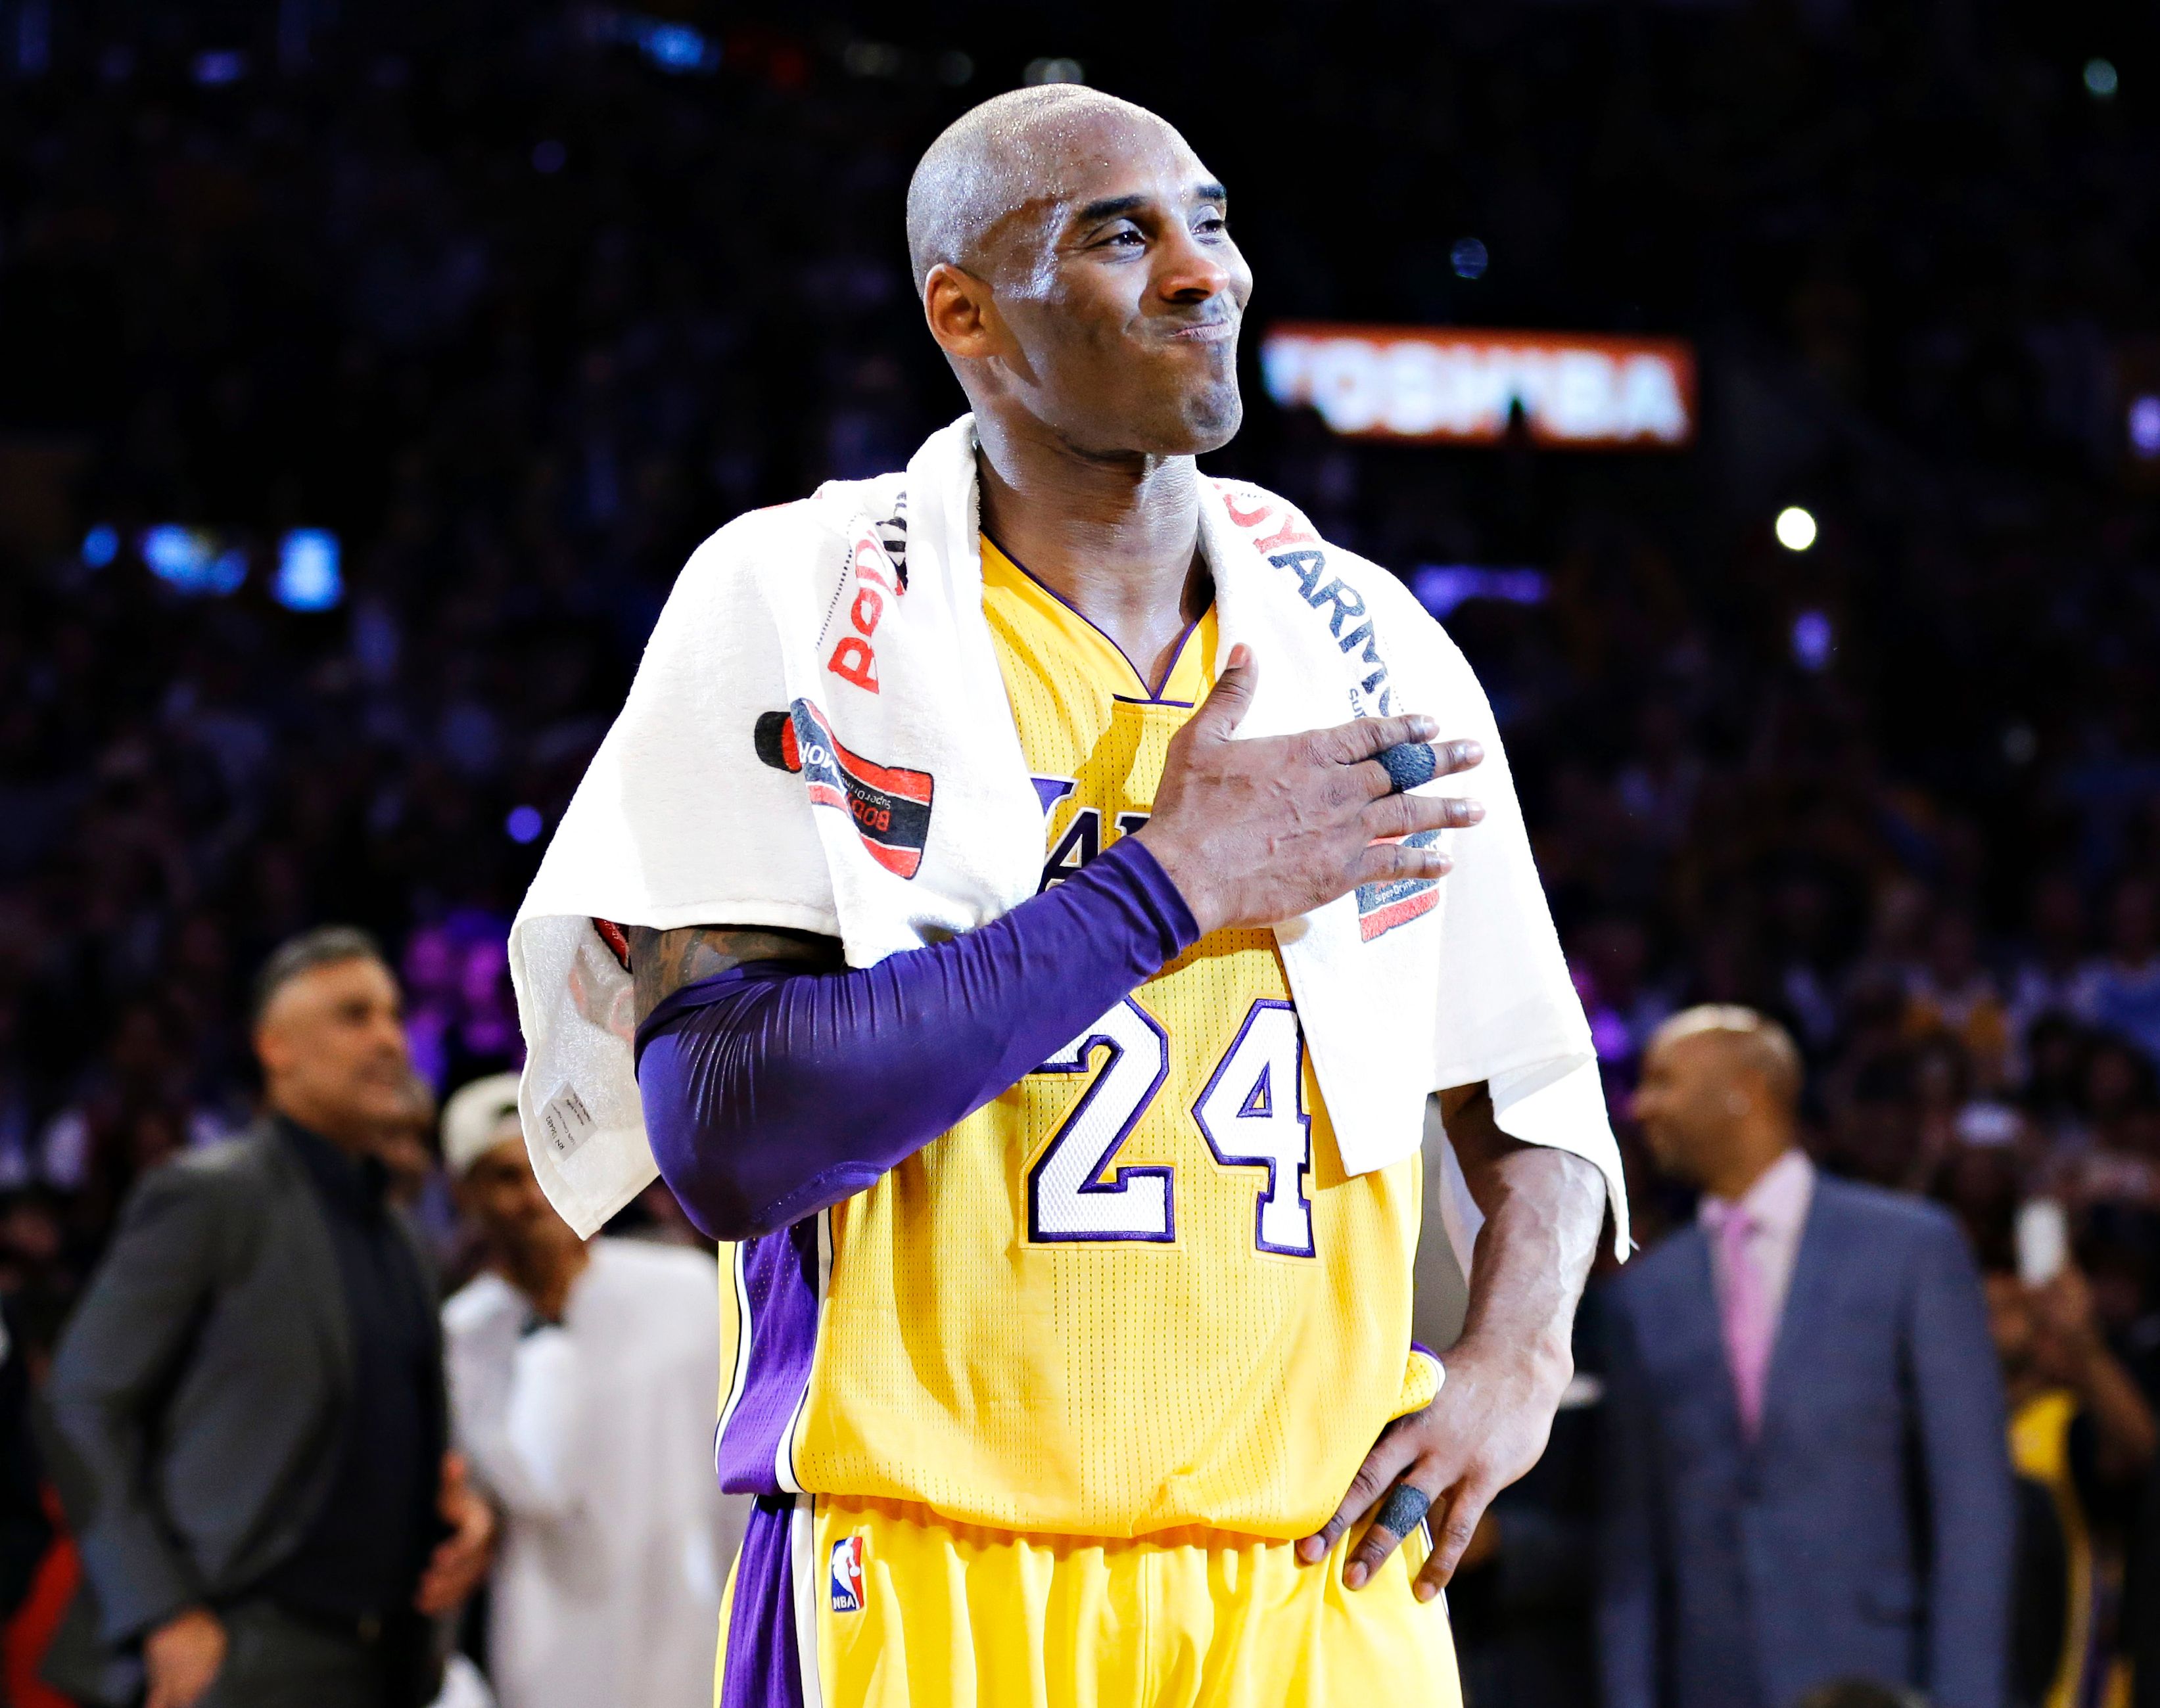 Kobe Bryant - Photos: Kobe Bryant Career Retrospective - ESPN3286 x 2599